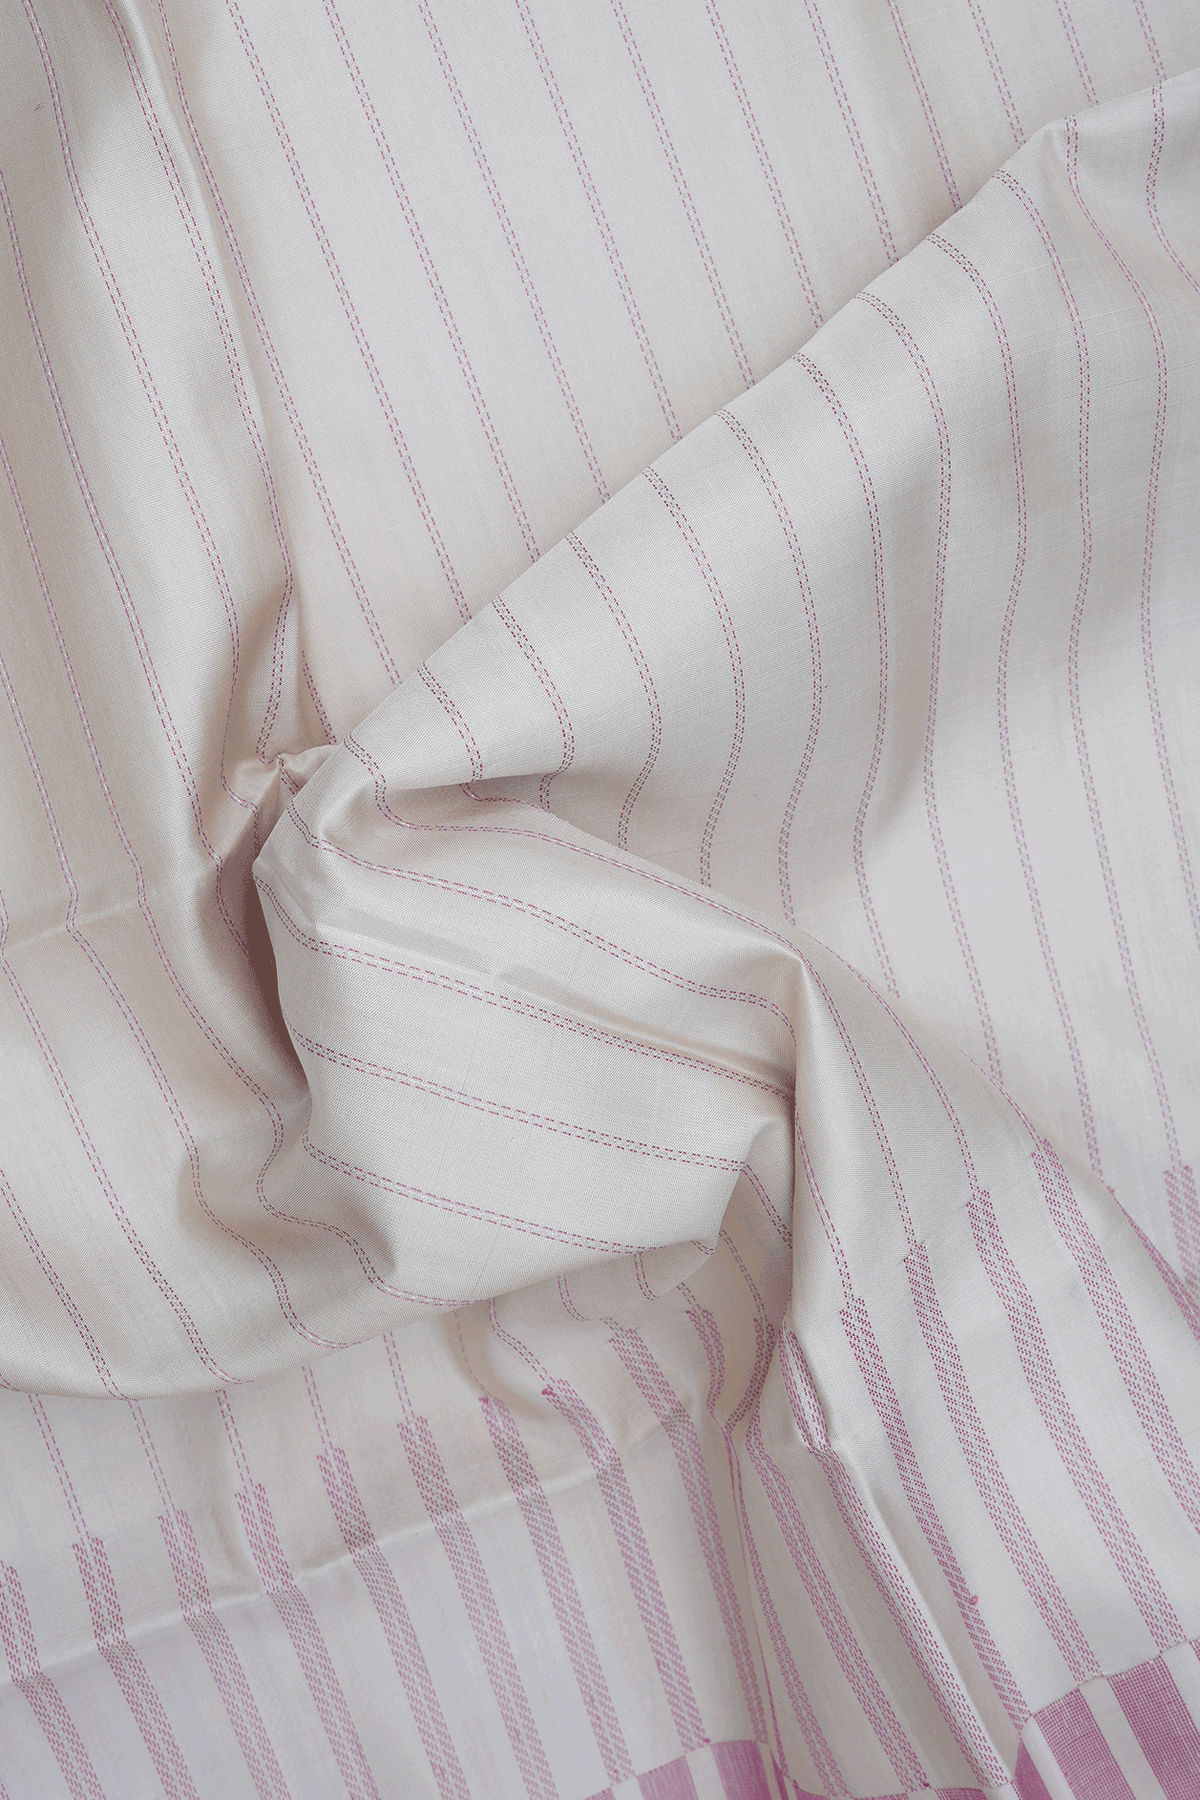 Stripes Threadwork Design Beige Soft Silk Saree